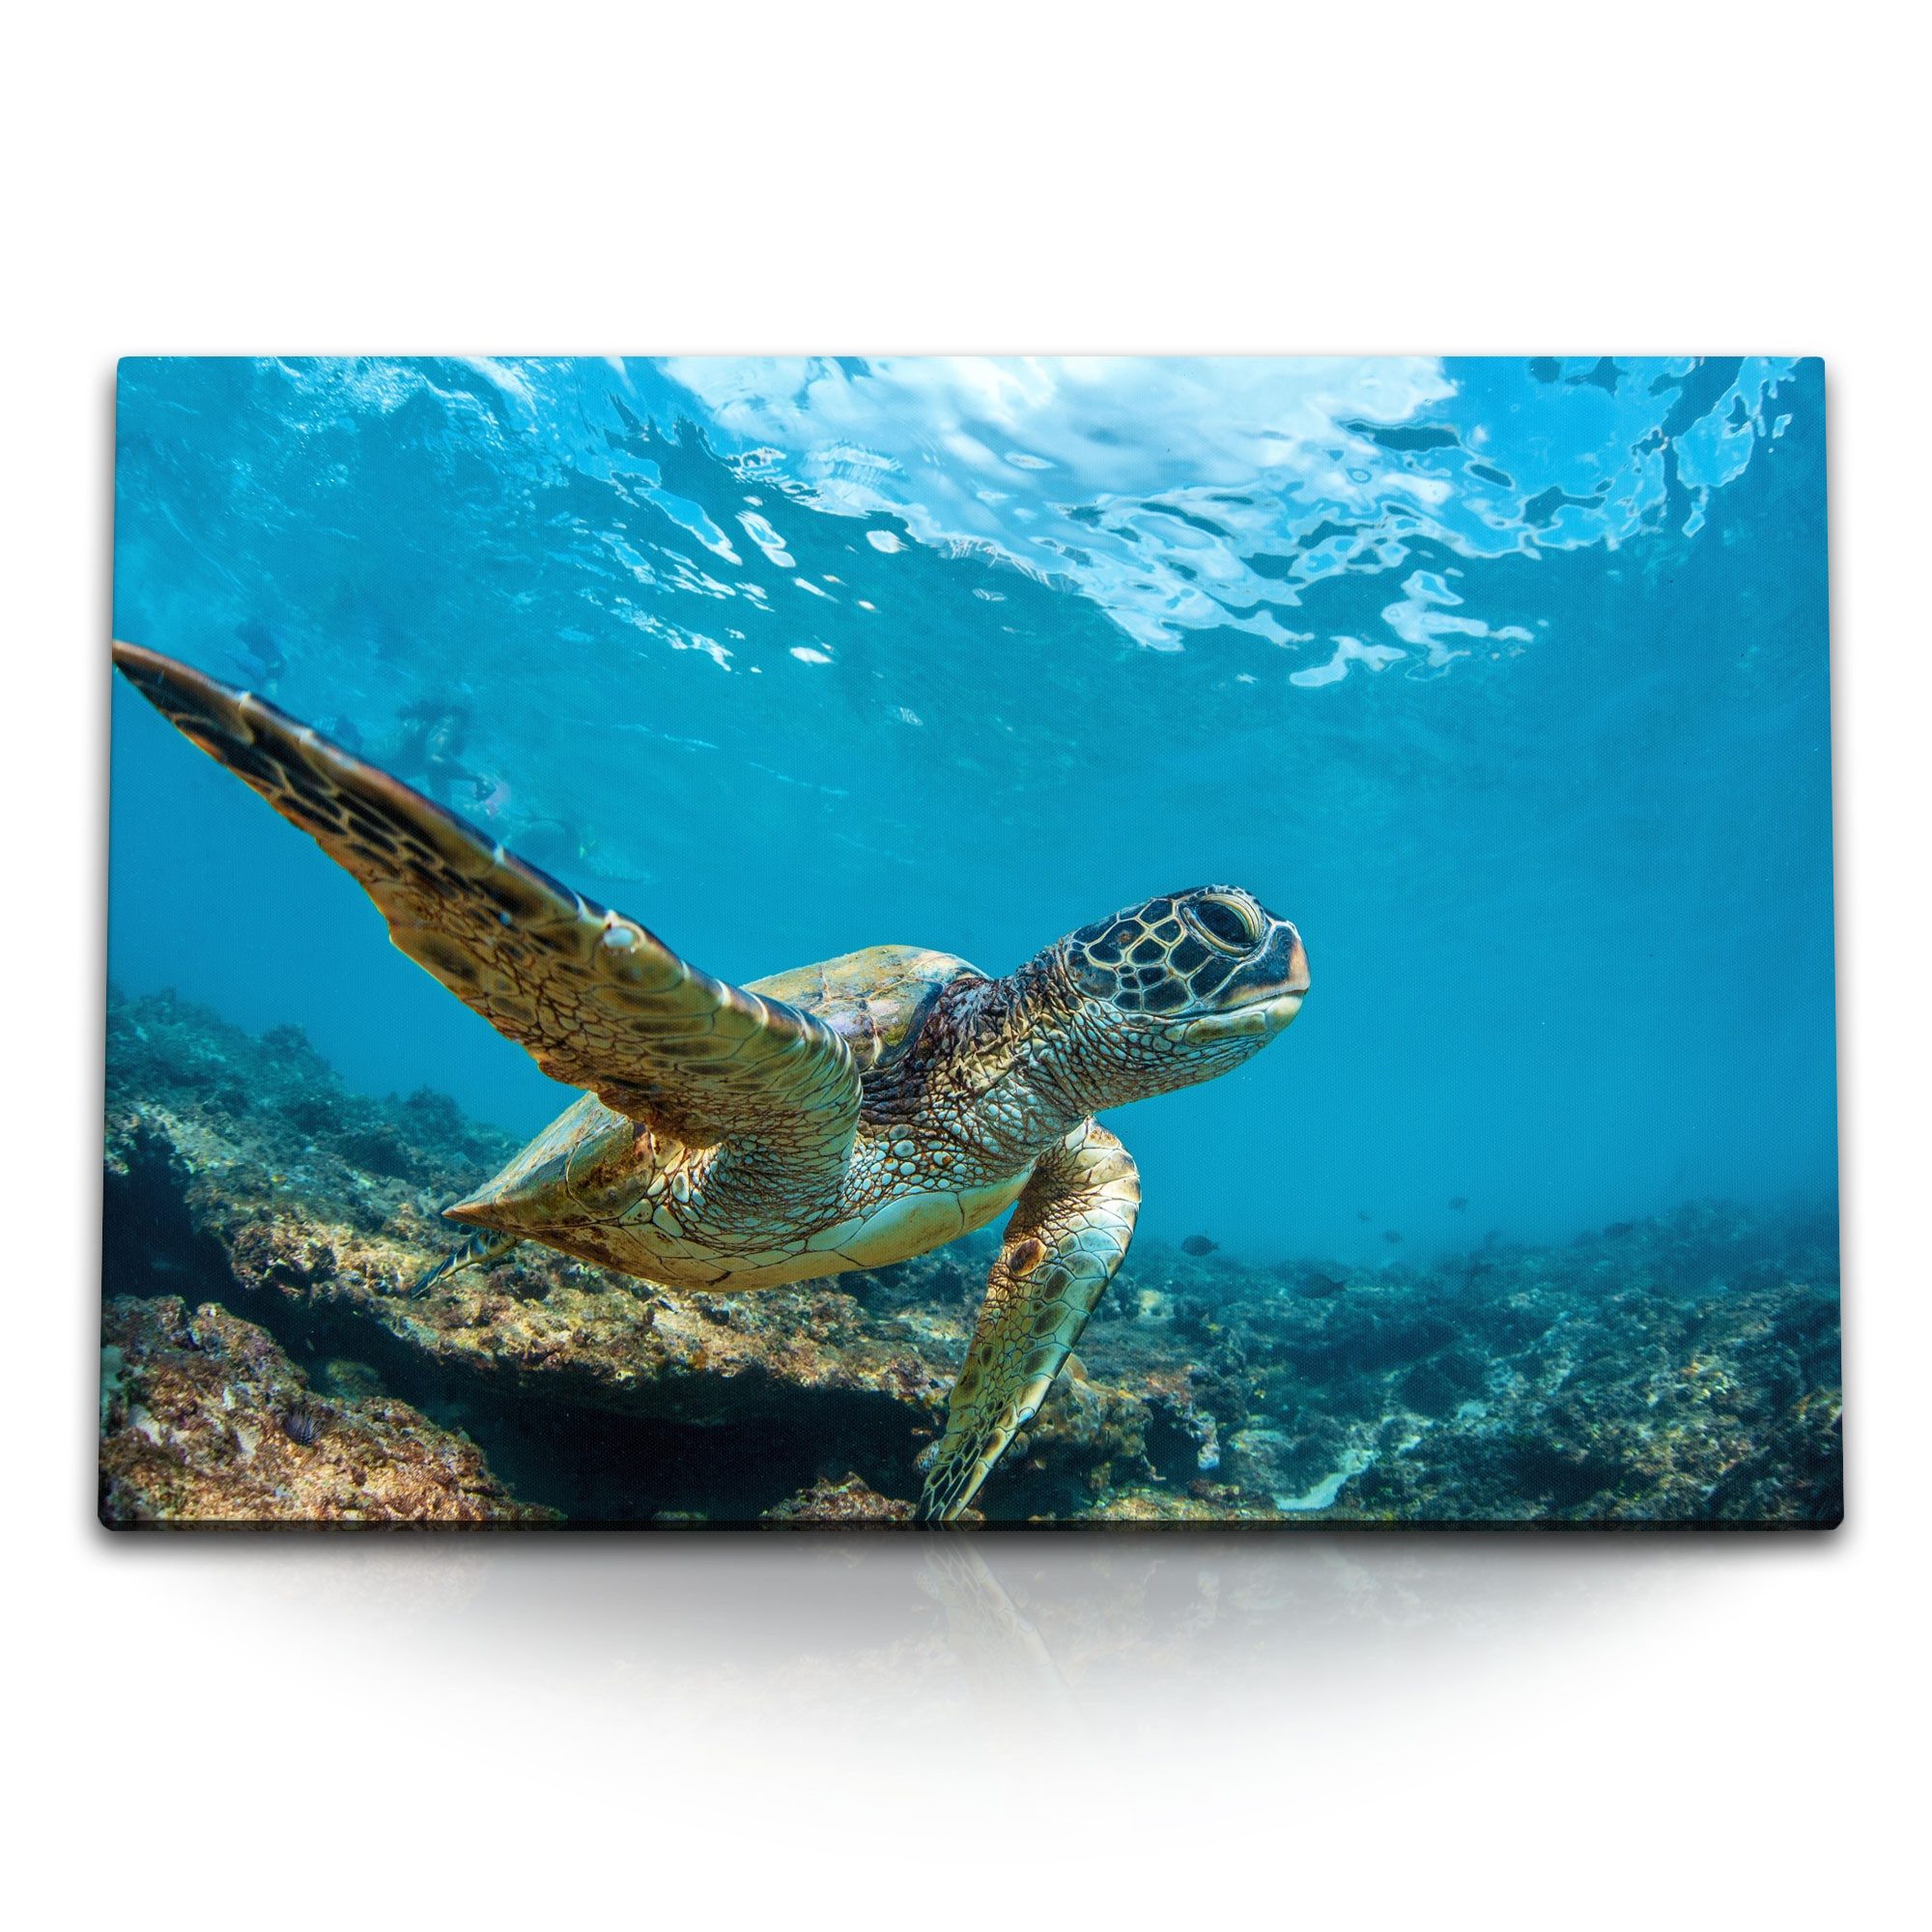 Sinus Art Leinwandbild 120x80cm Wandbild auf Leinwand Seeschildkröte unter Wasser Korallen Bl, (1 St)